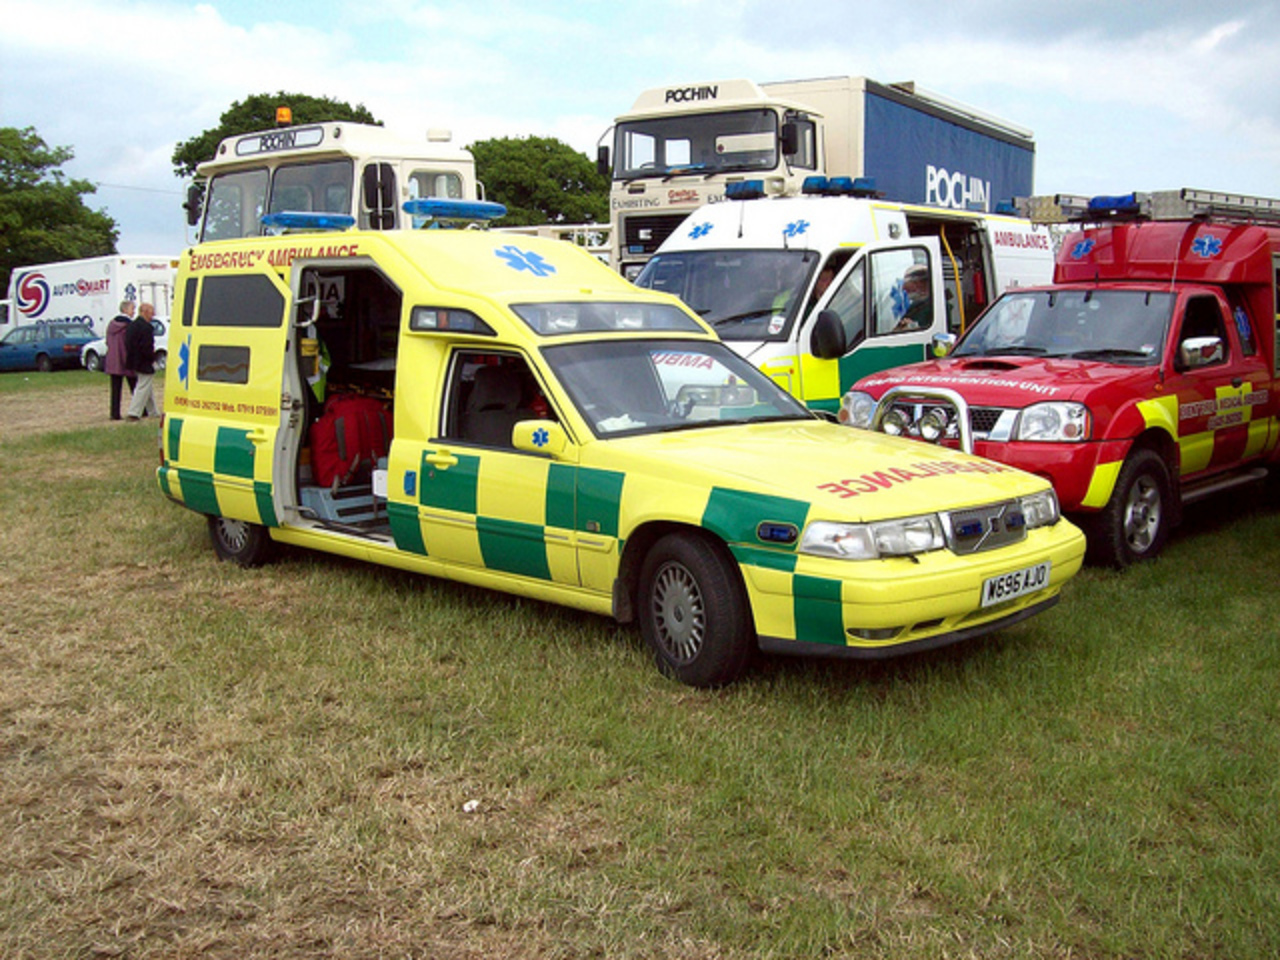 132 Volvo V90 Ambulance (2000) | Flickr - Photo Sharing!